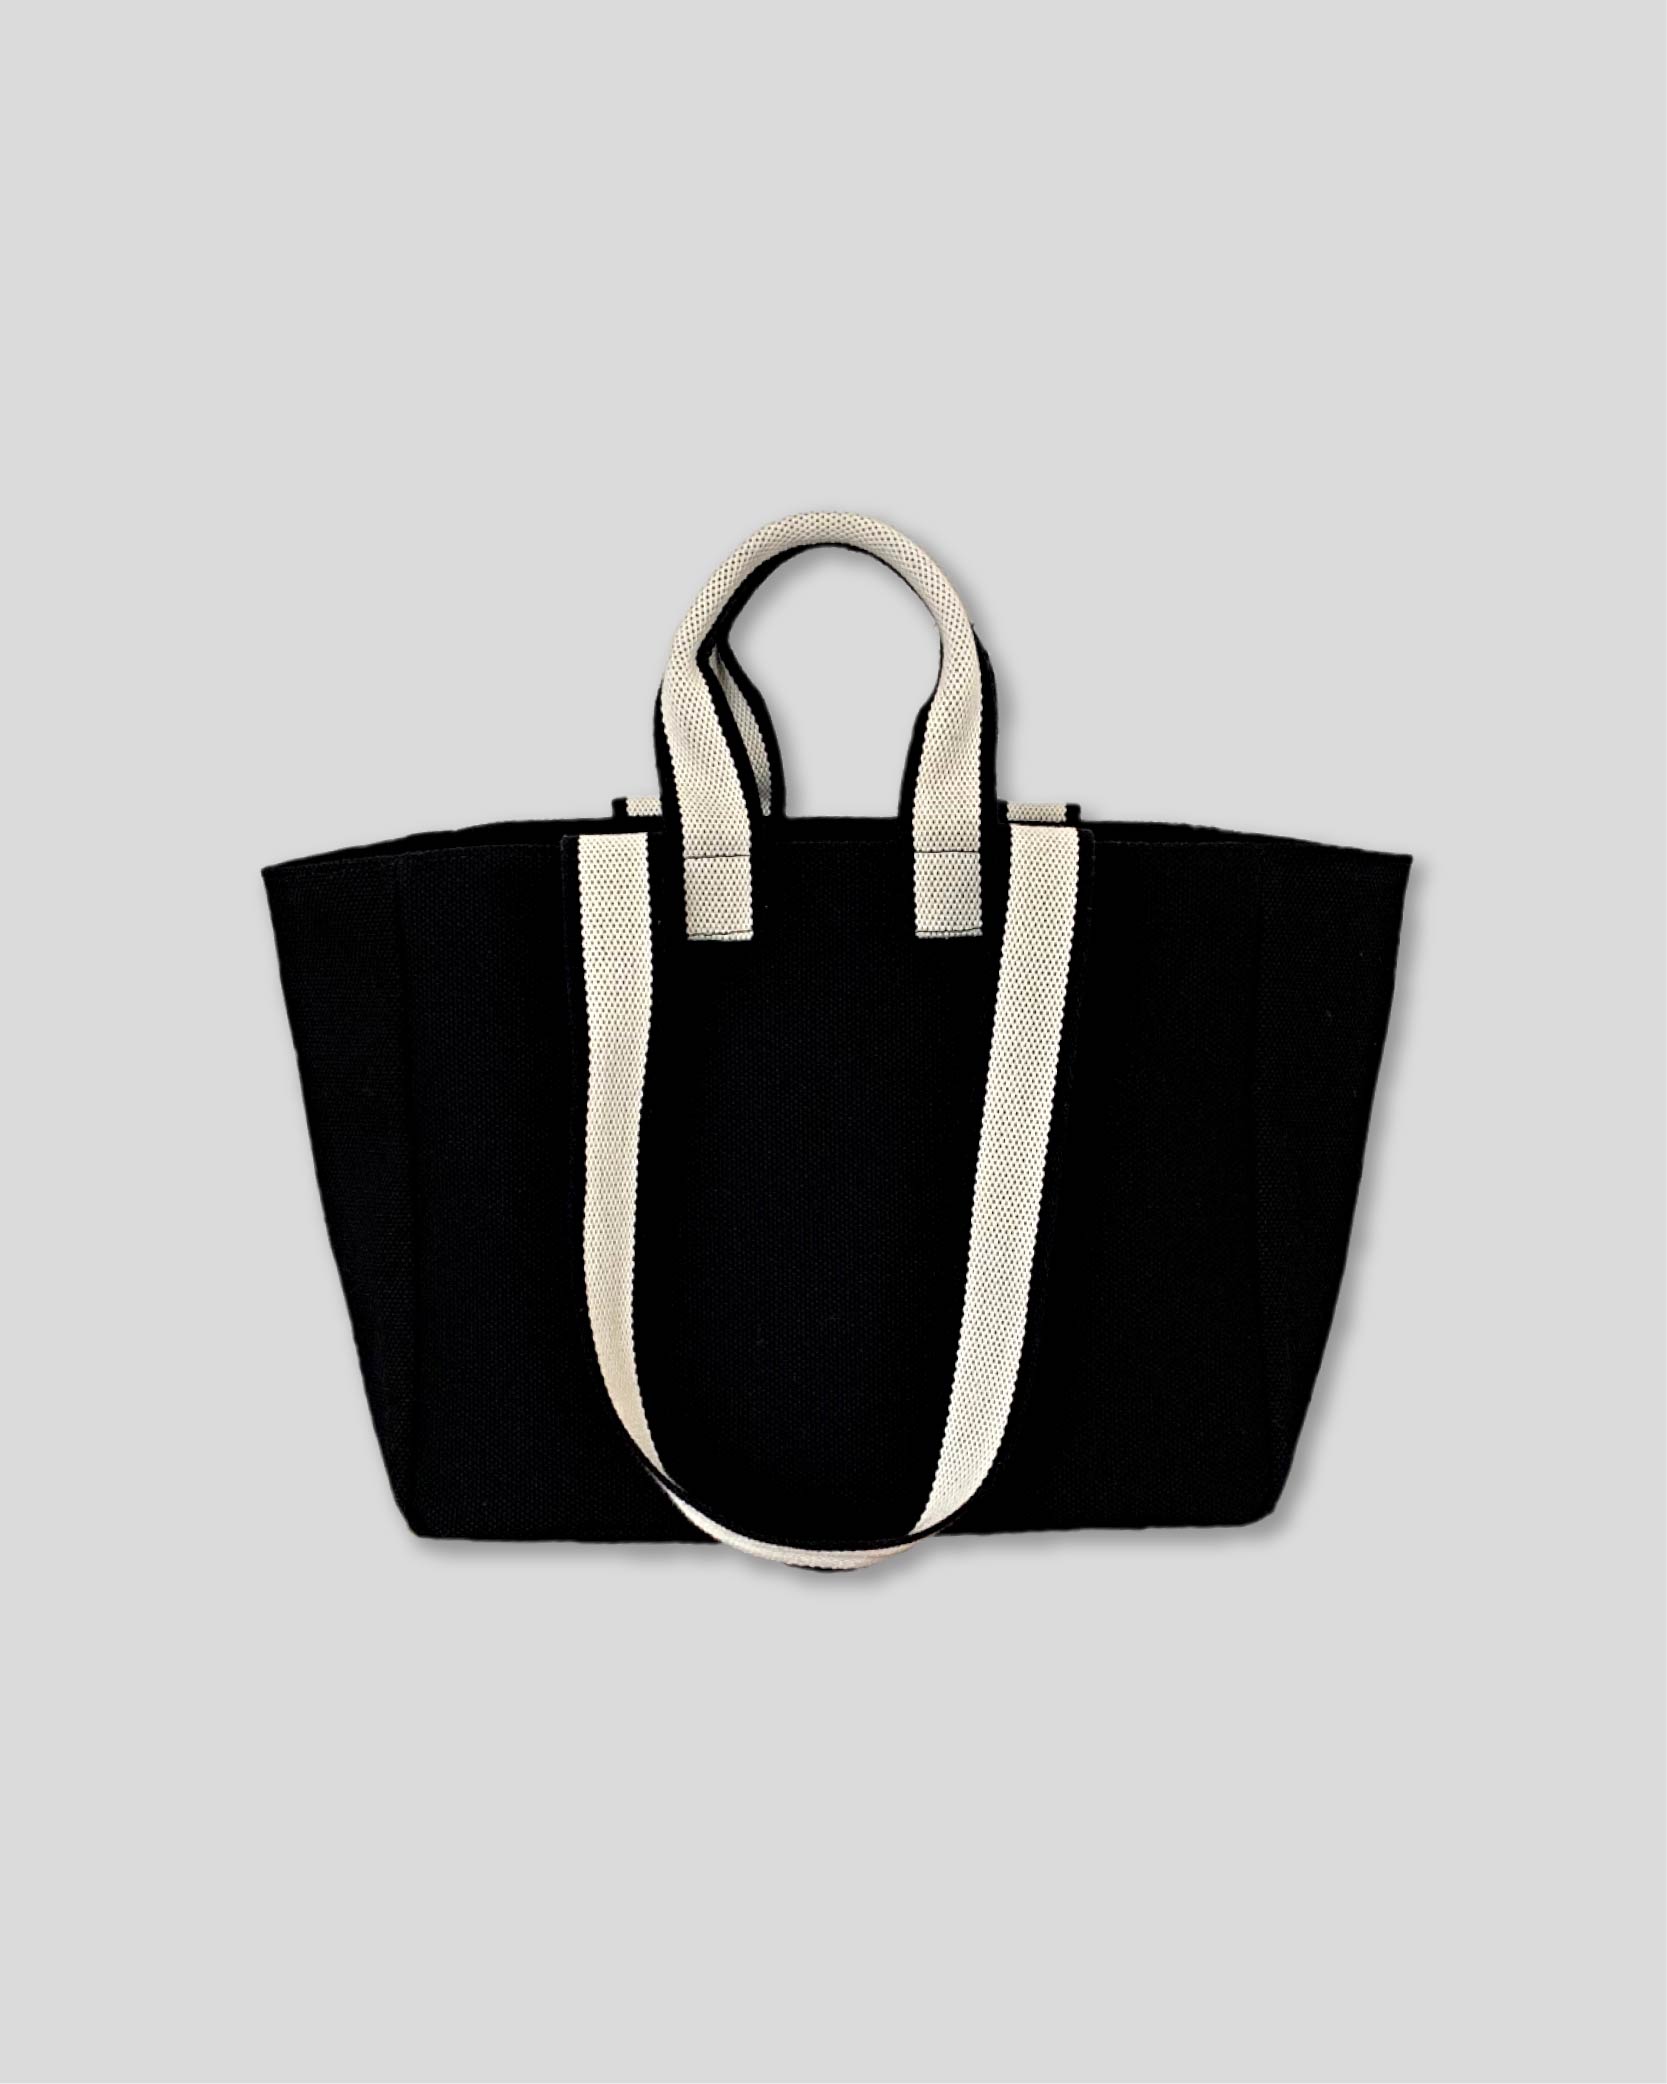 언폴드,unfold,에코백,파우치,천가방,코스터,백팩,스크런치[예약 배송 2/23] Two-tone strap bag (black)